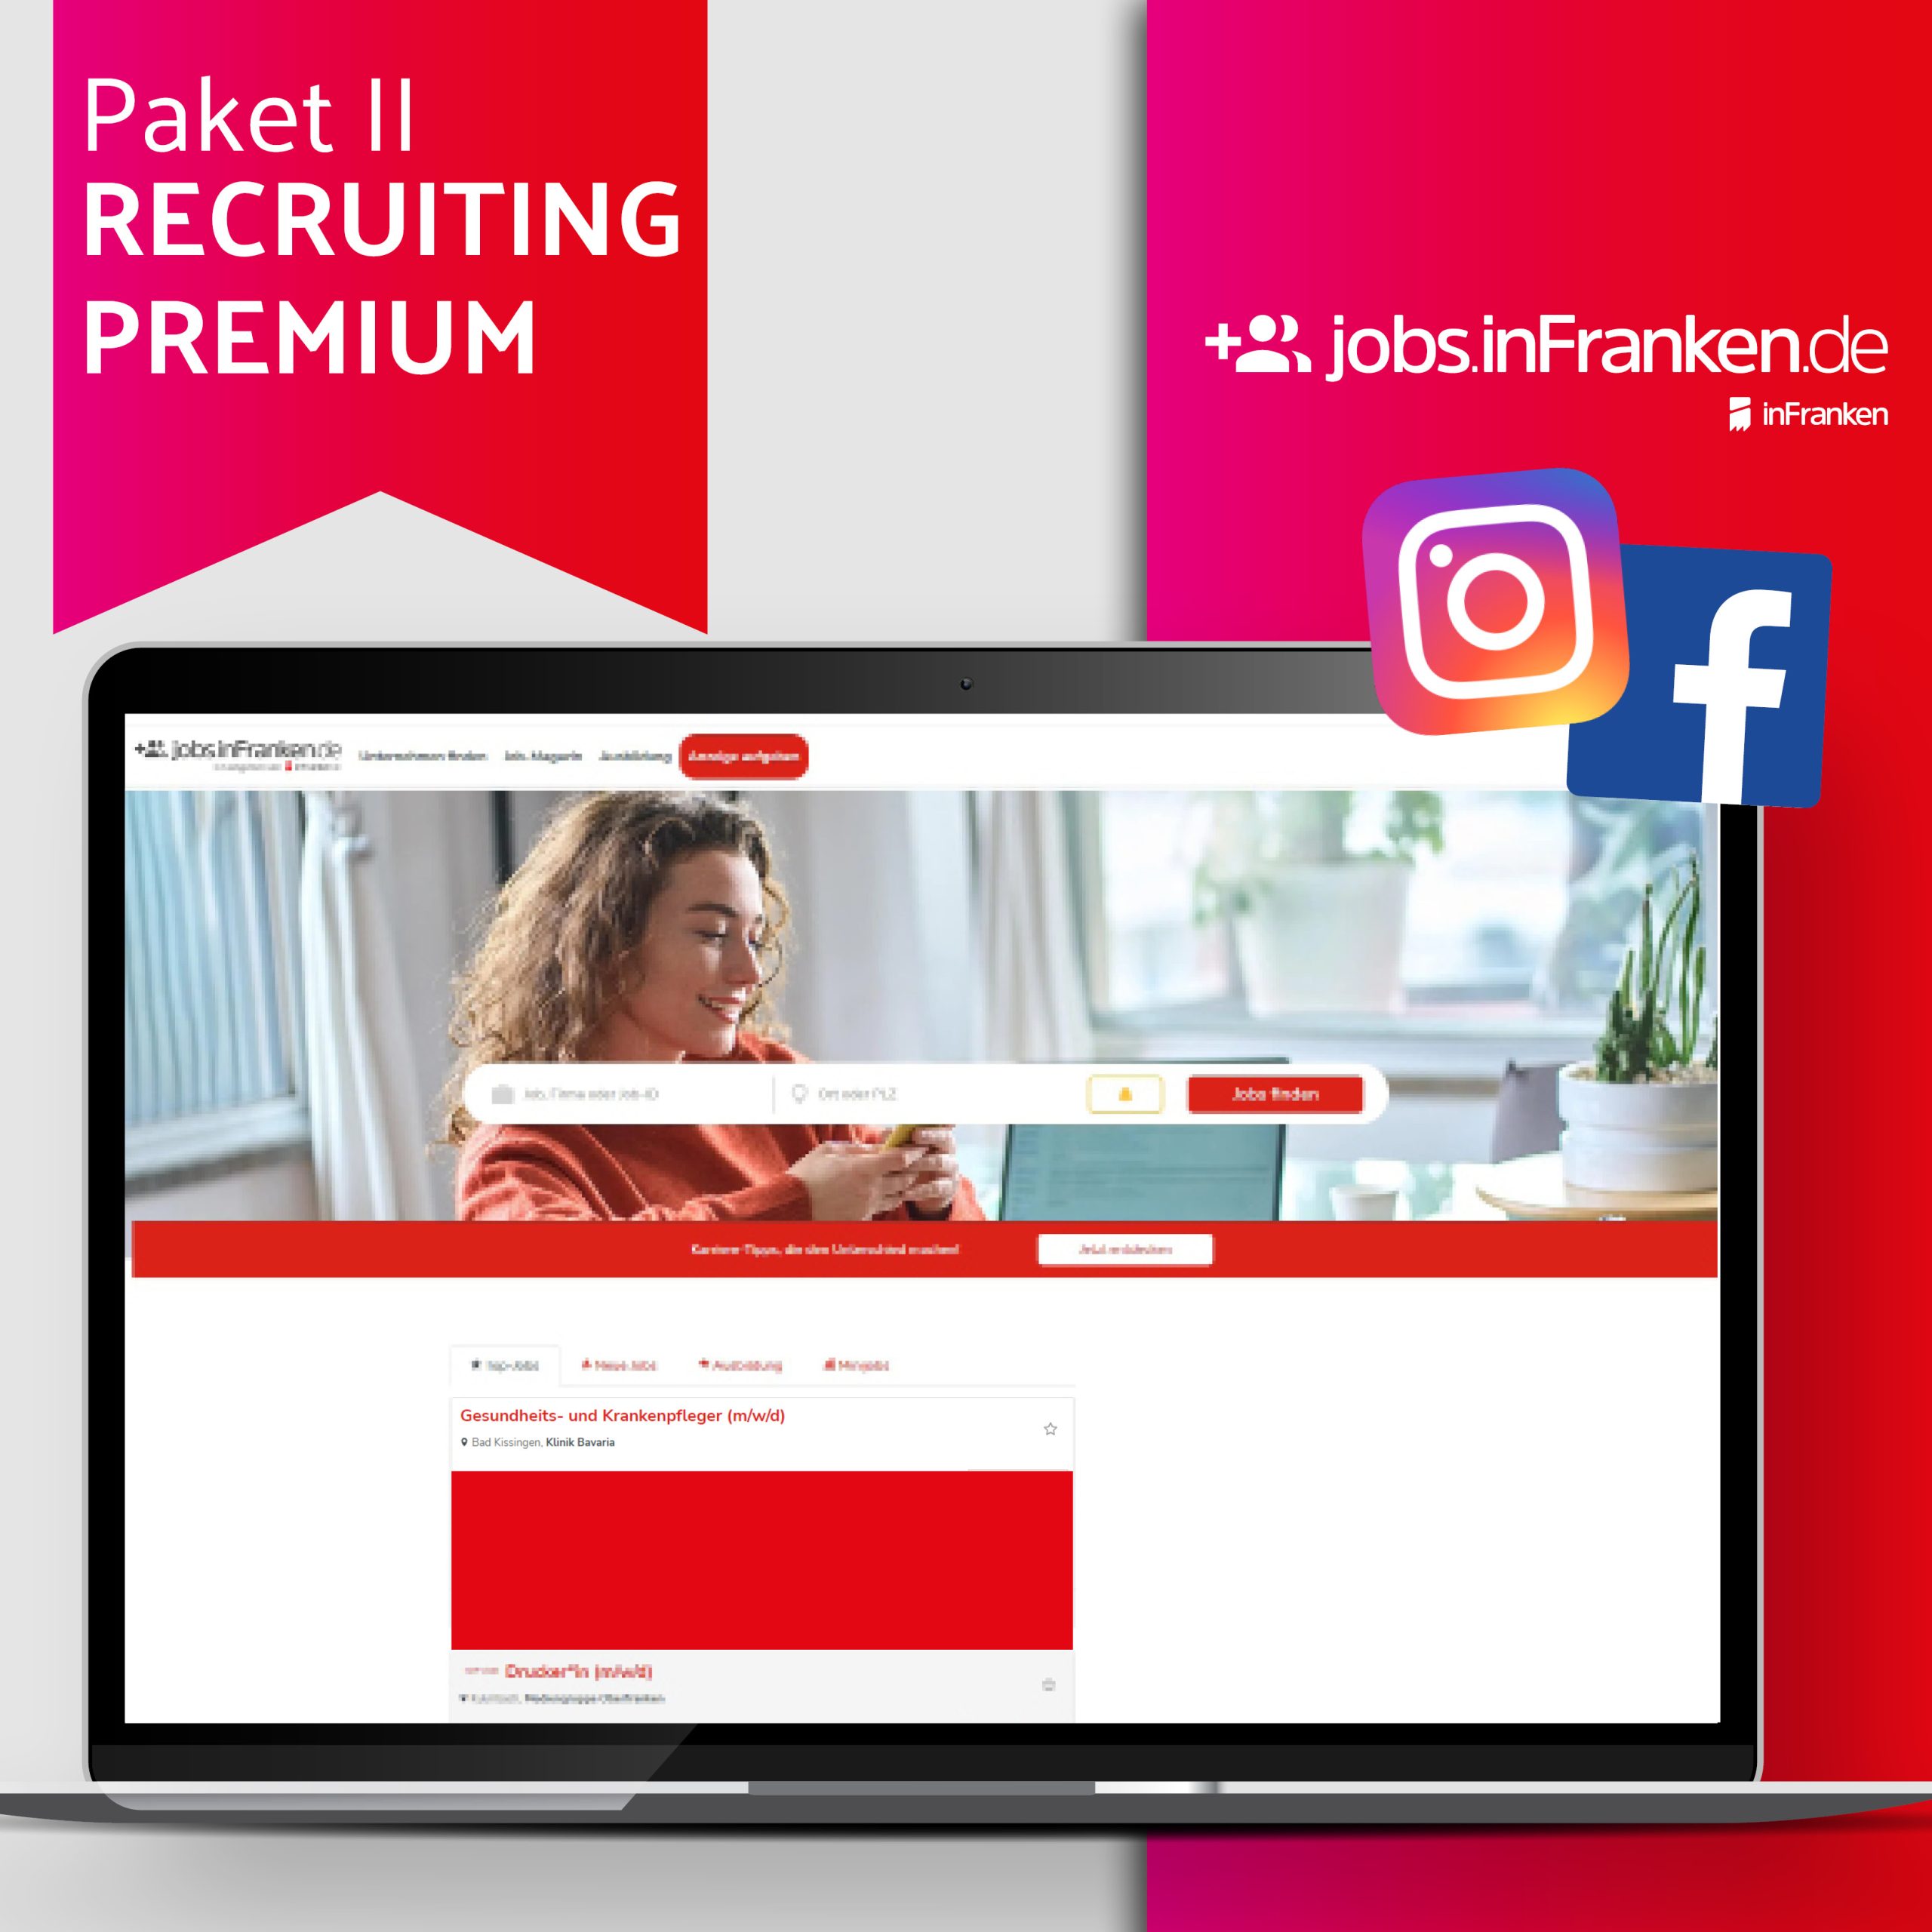 Paket Recruiting Premium